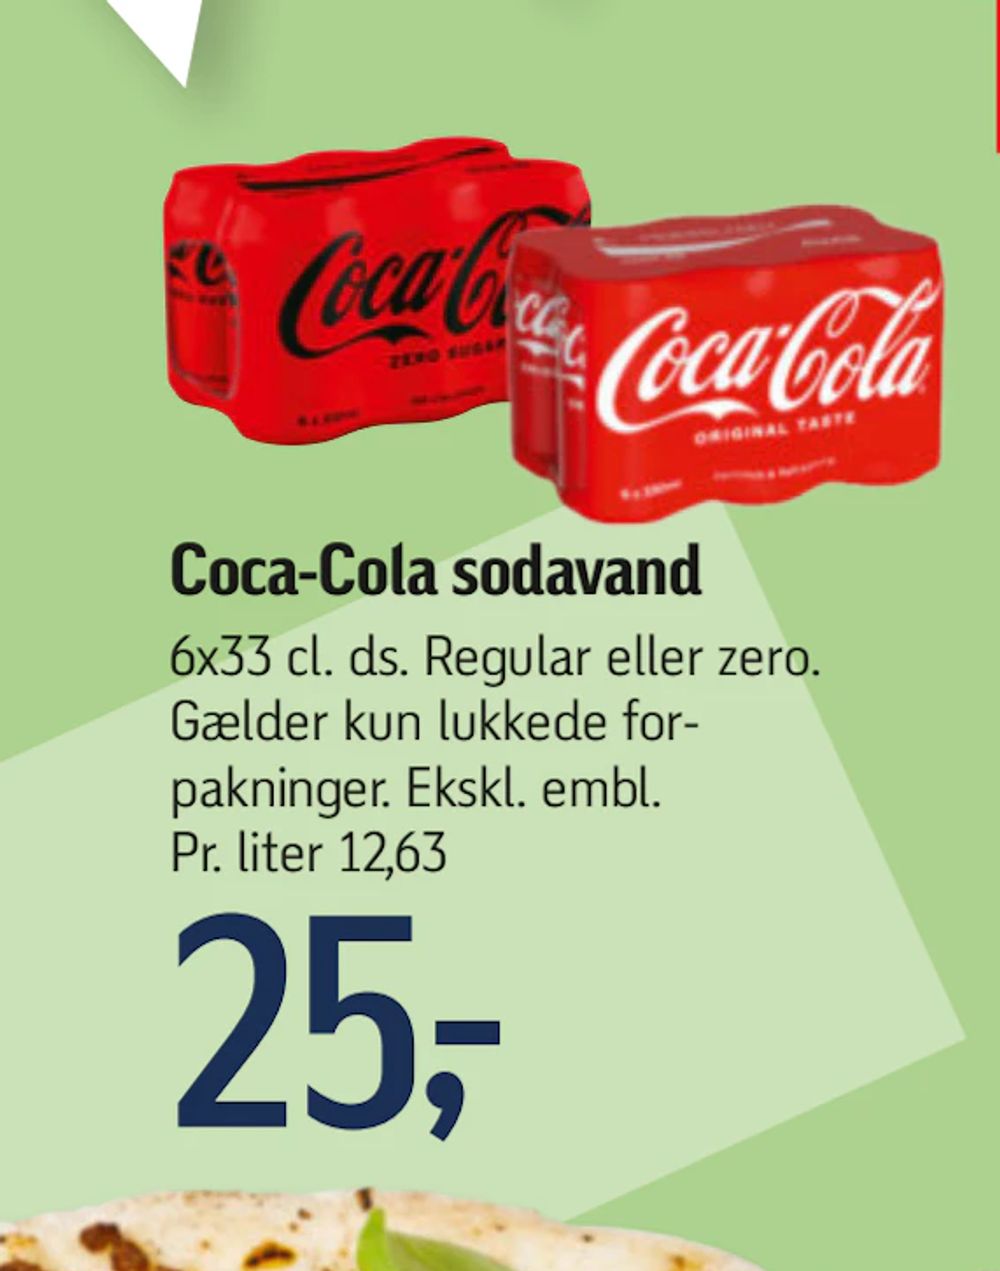 Tilbud på Coca-Cola sodavand fra føtex til 25 kr.